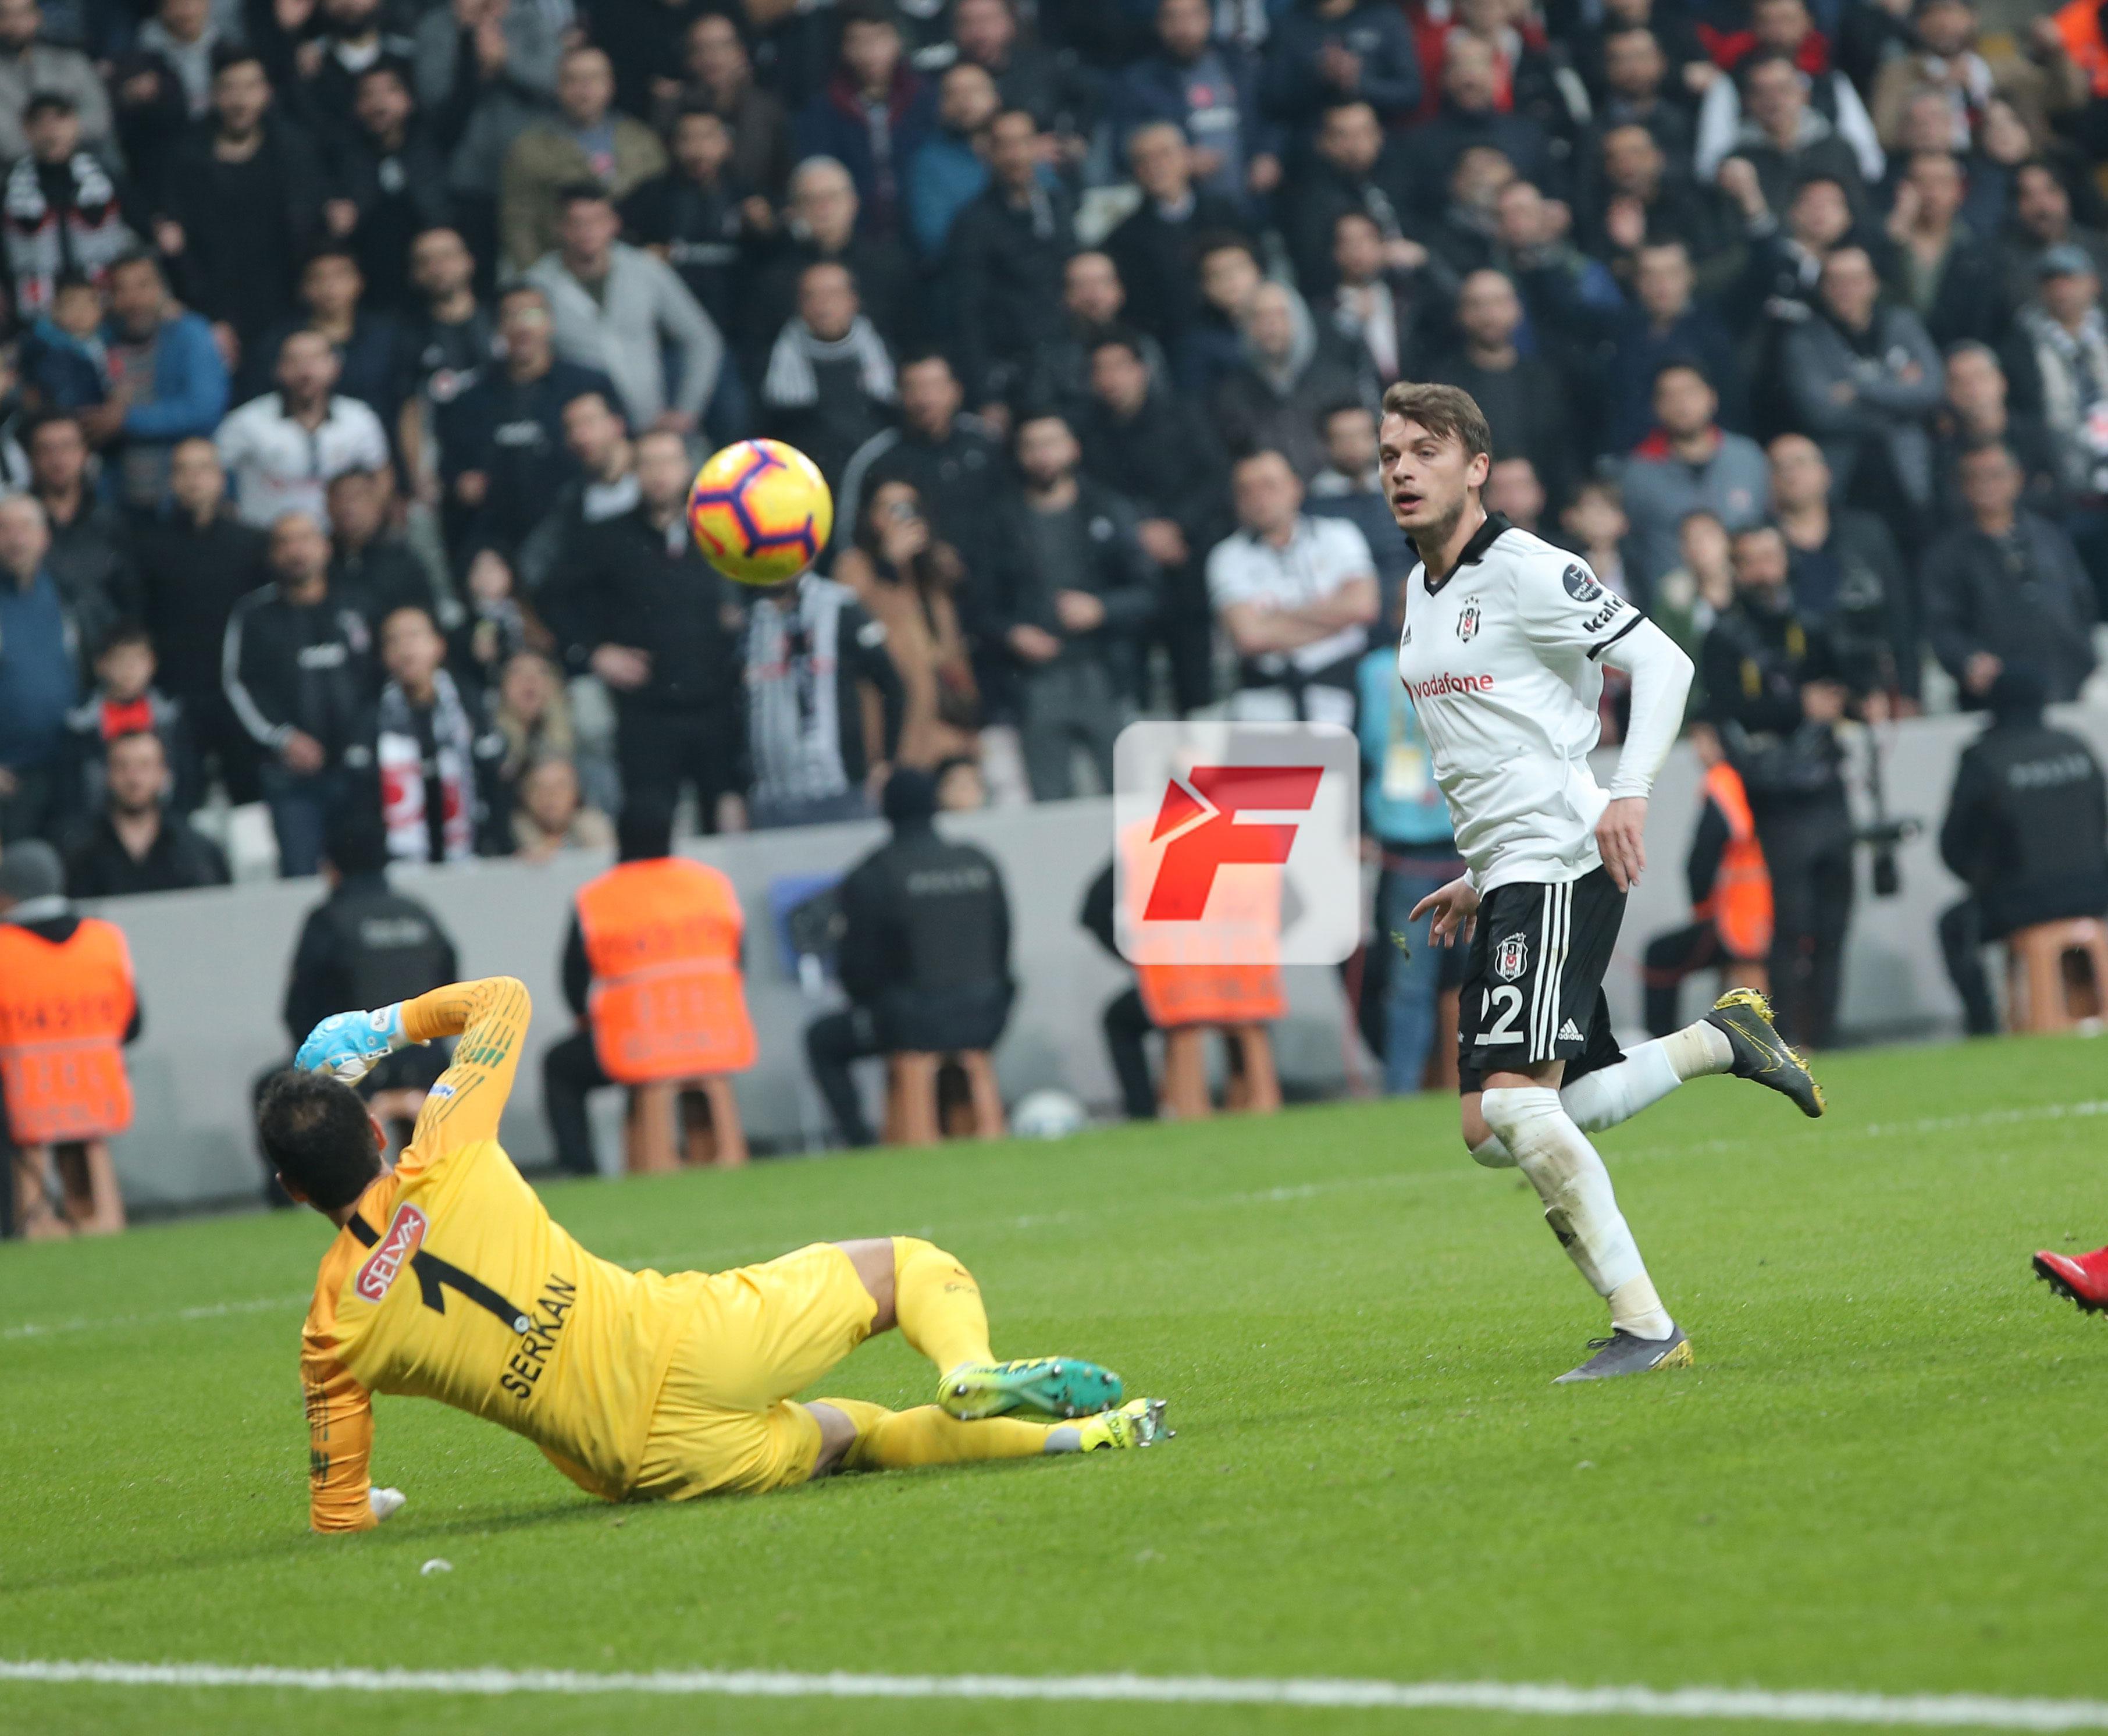 (ÖZET) Beşiktaş - Konyaspor maç sonucu: 3-2